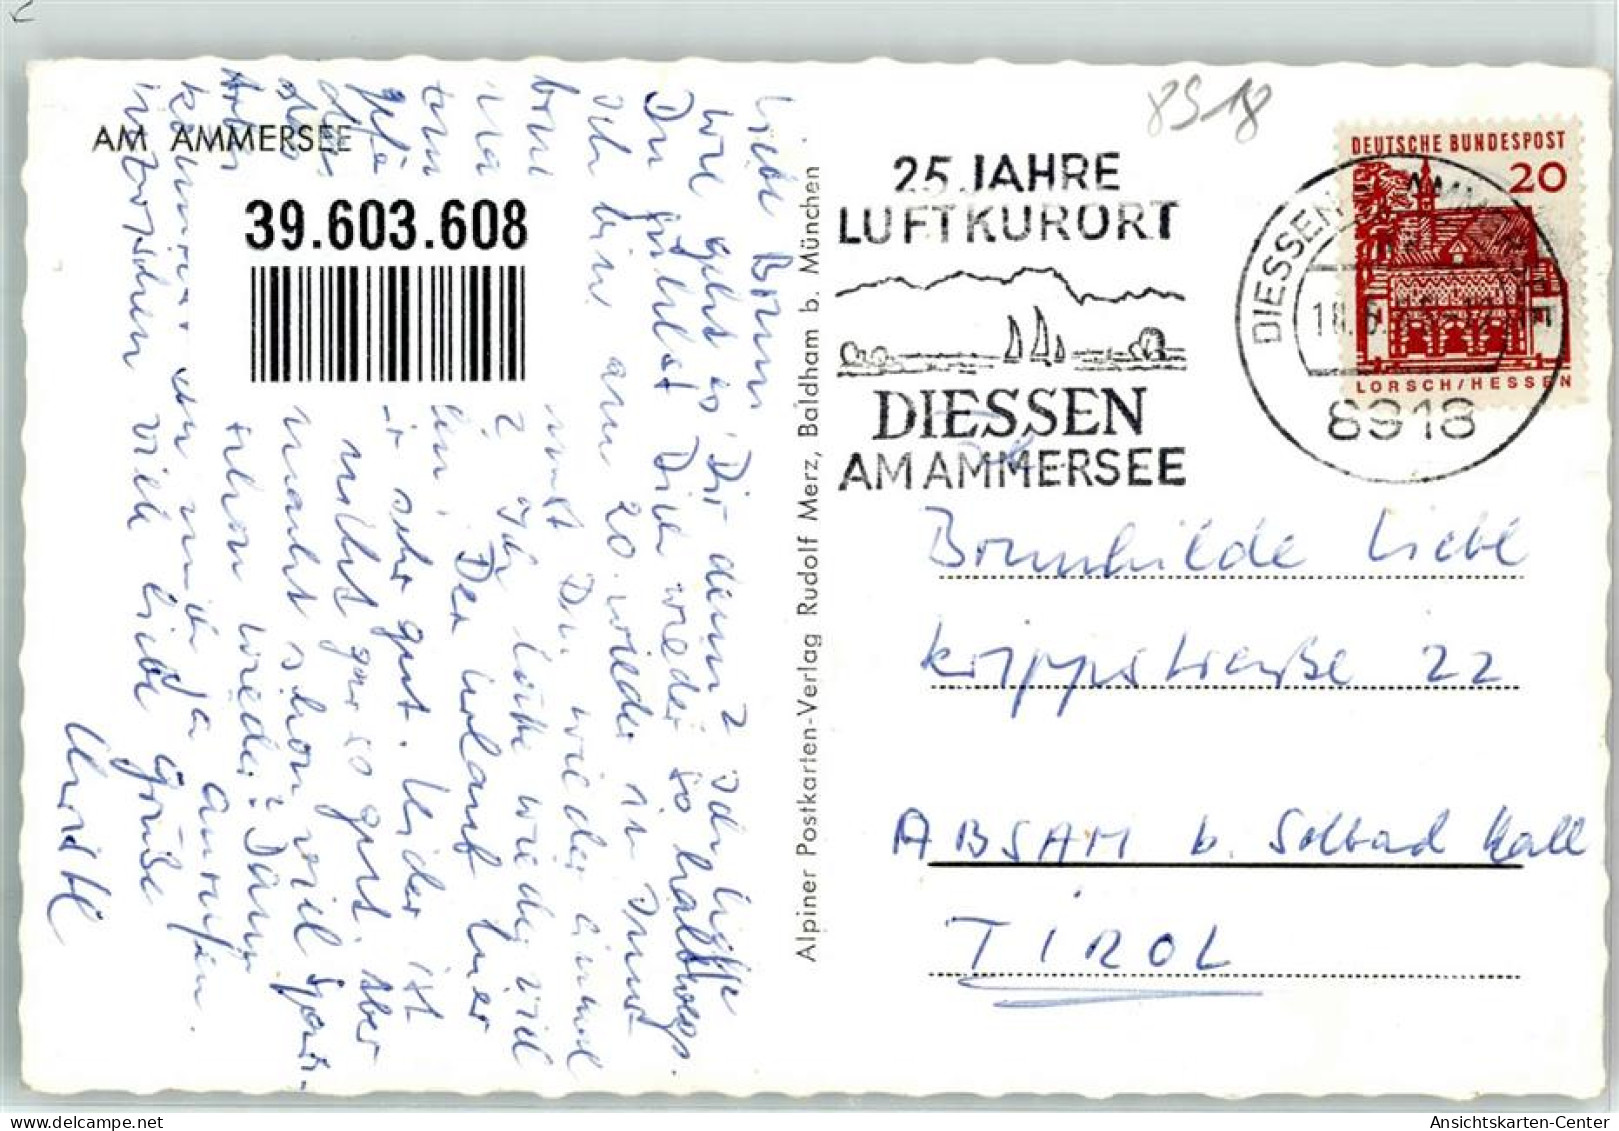 39603608 - Diessen A. Ammersee - Diessen